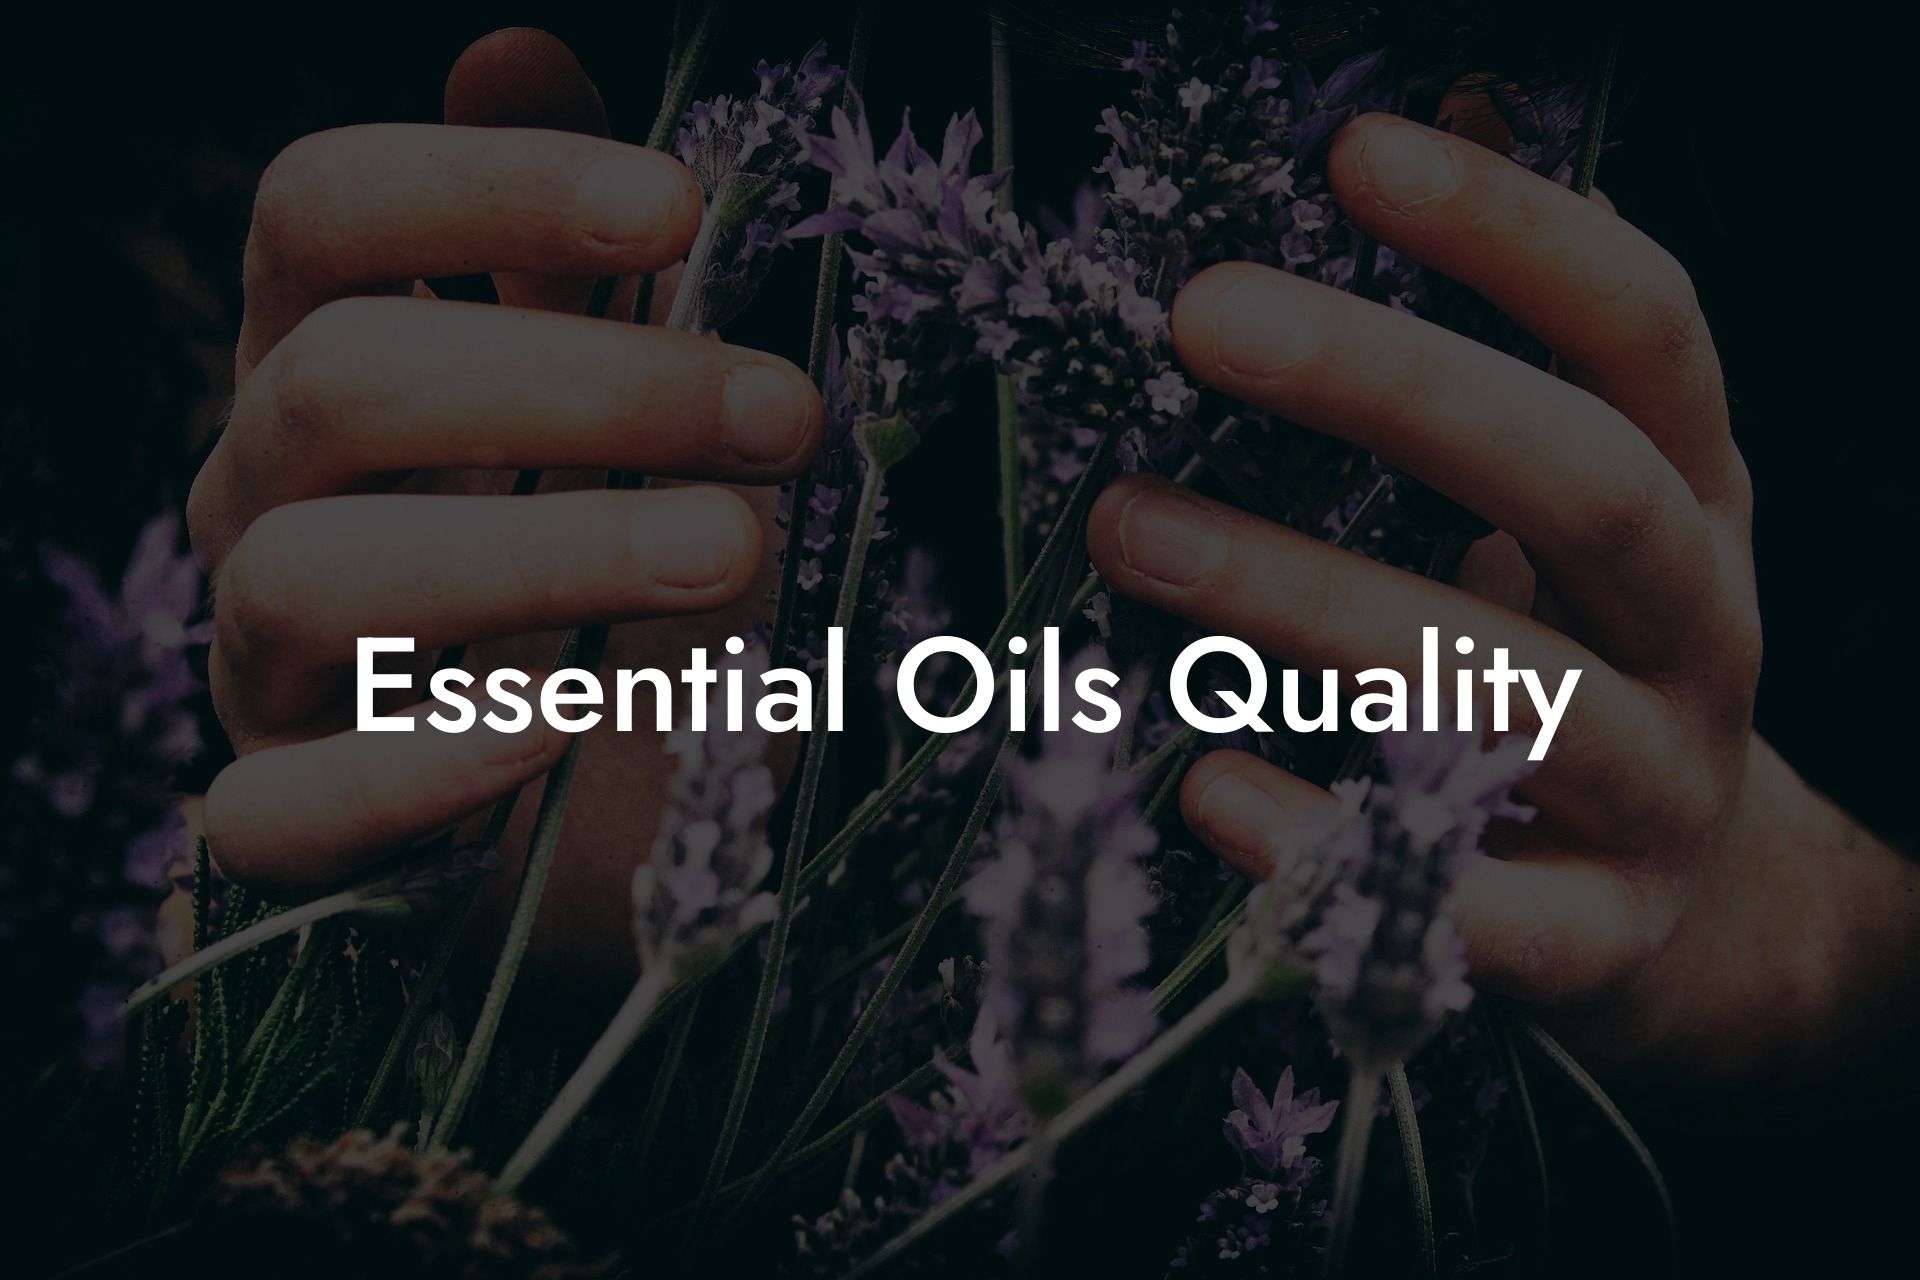 Essential Oils Quality